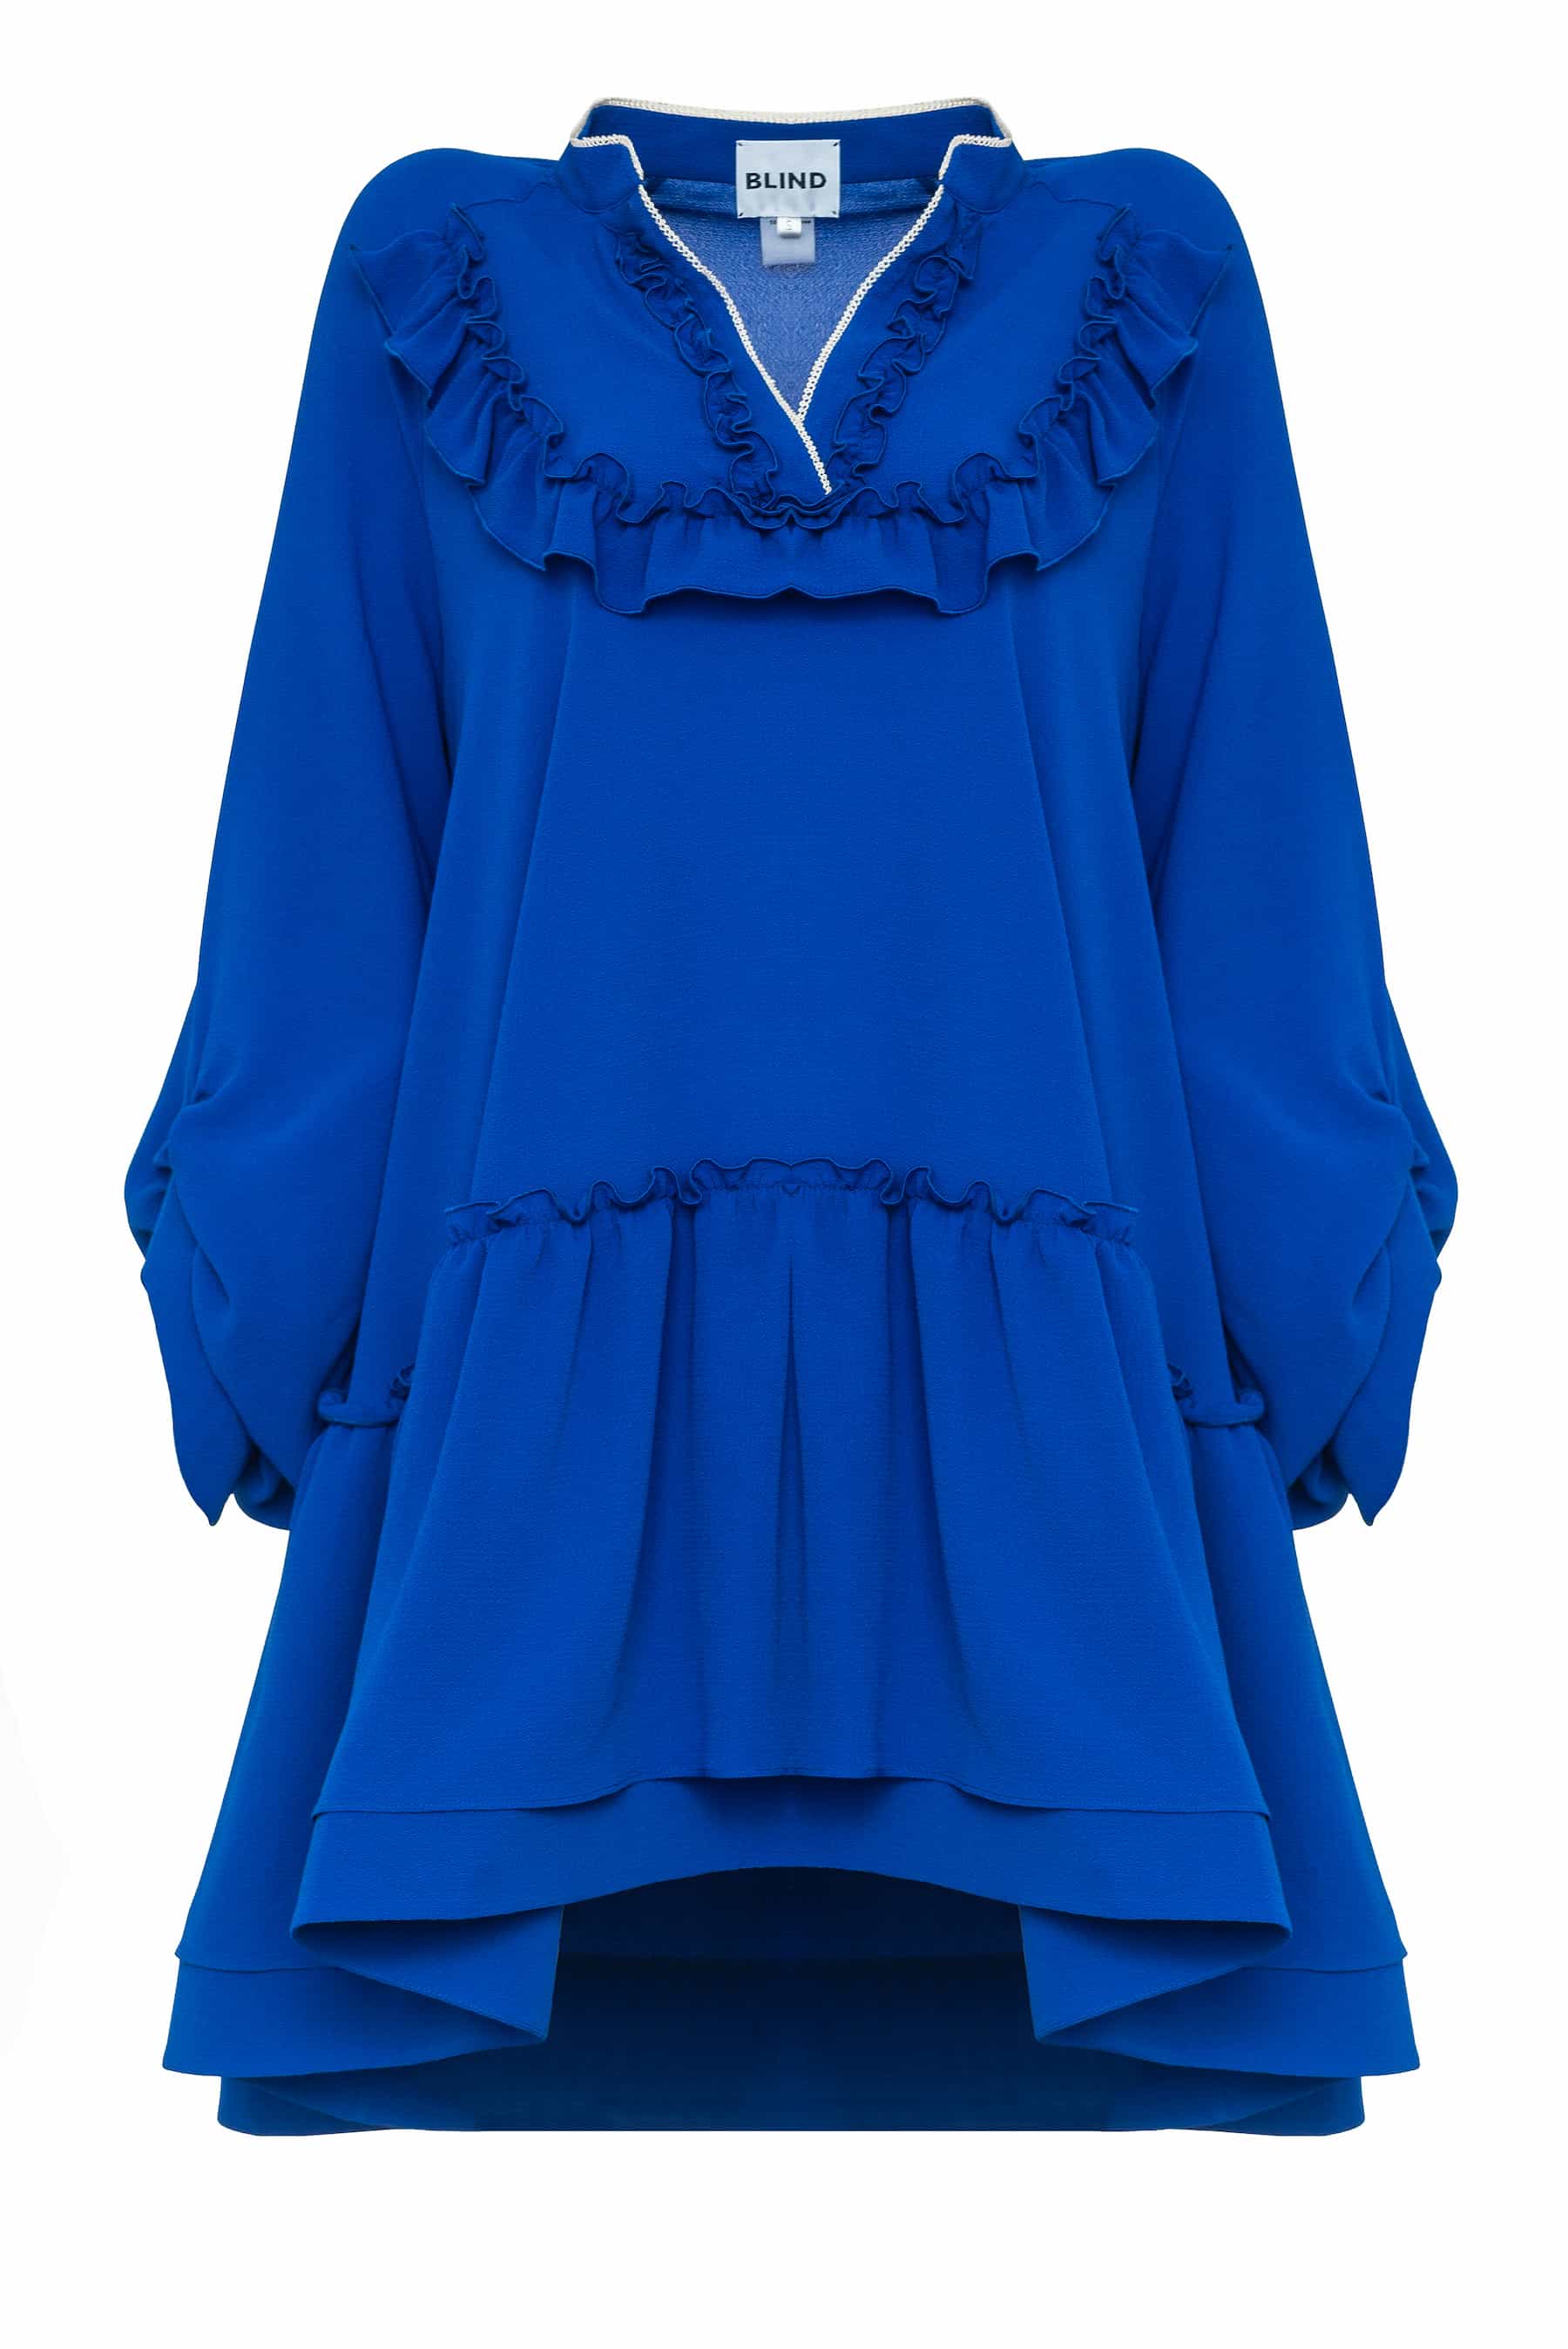 Платье из крепа цвета синий электрик свободного кроя, с воланом